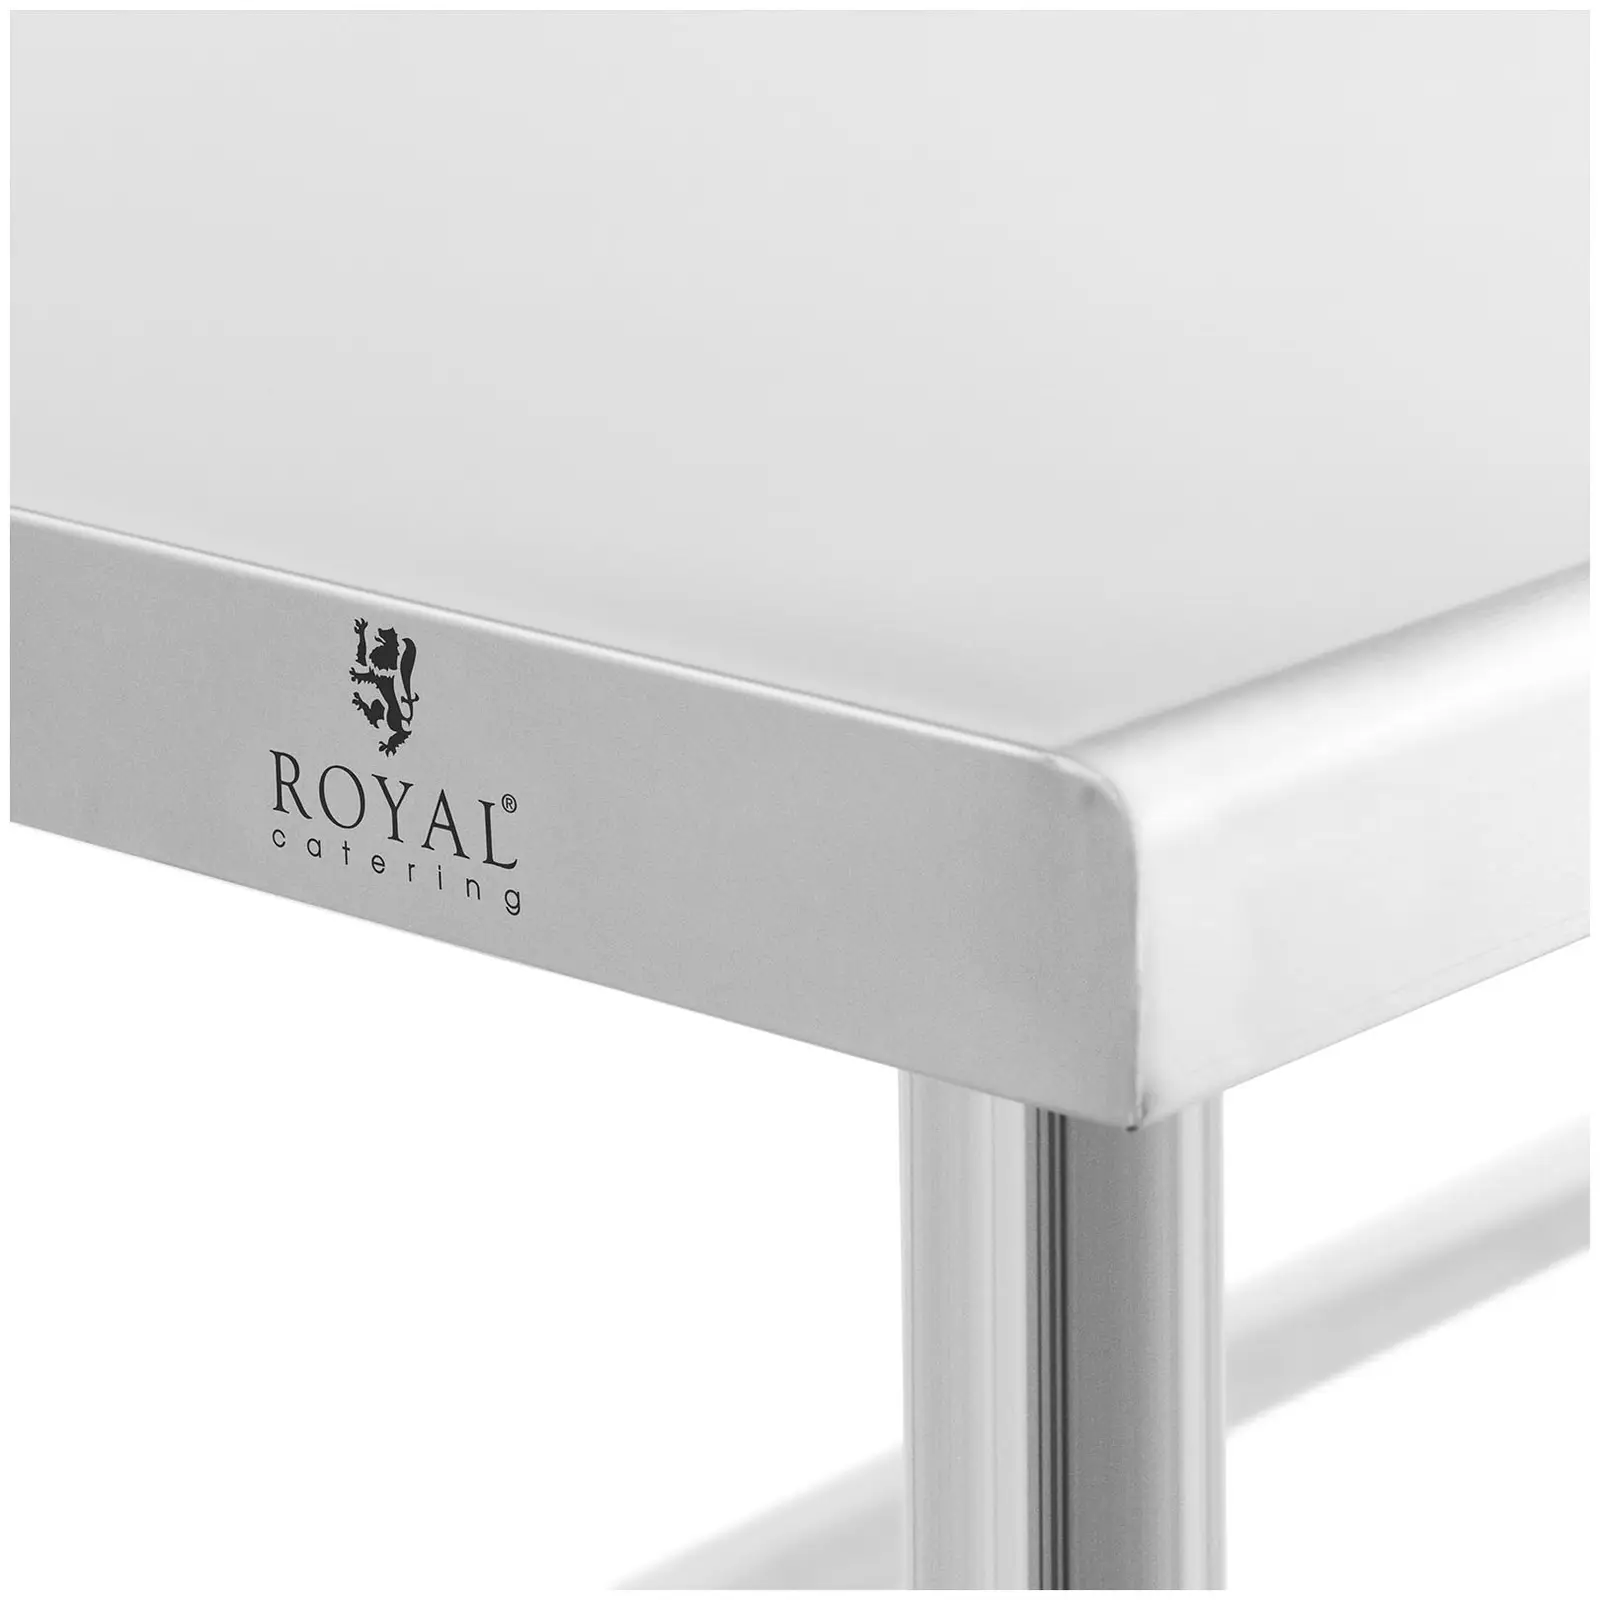 Stół ze stali nierdzewnej - 150 x 60 cm - rant - udźwig 90 kg - Royal Catering